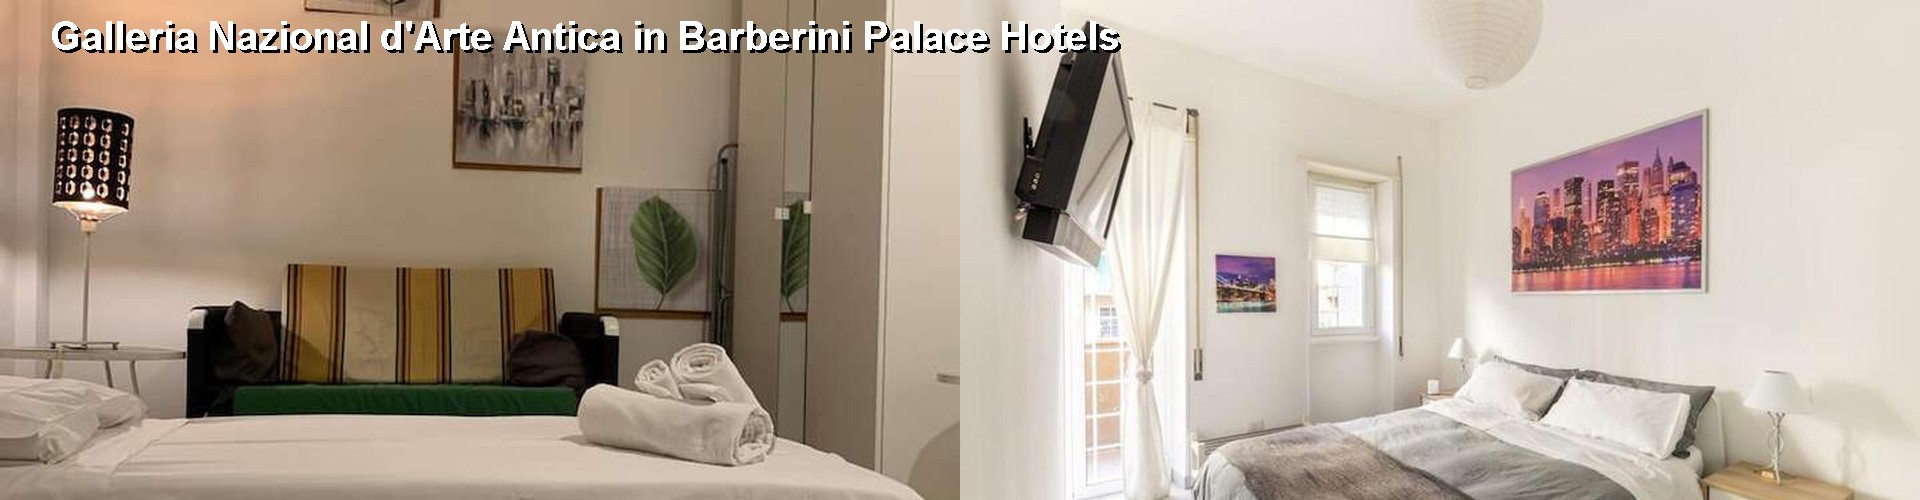 5 Best Hotels near Galleria Nazional d'Arte Antica in Barberini Palace